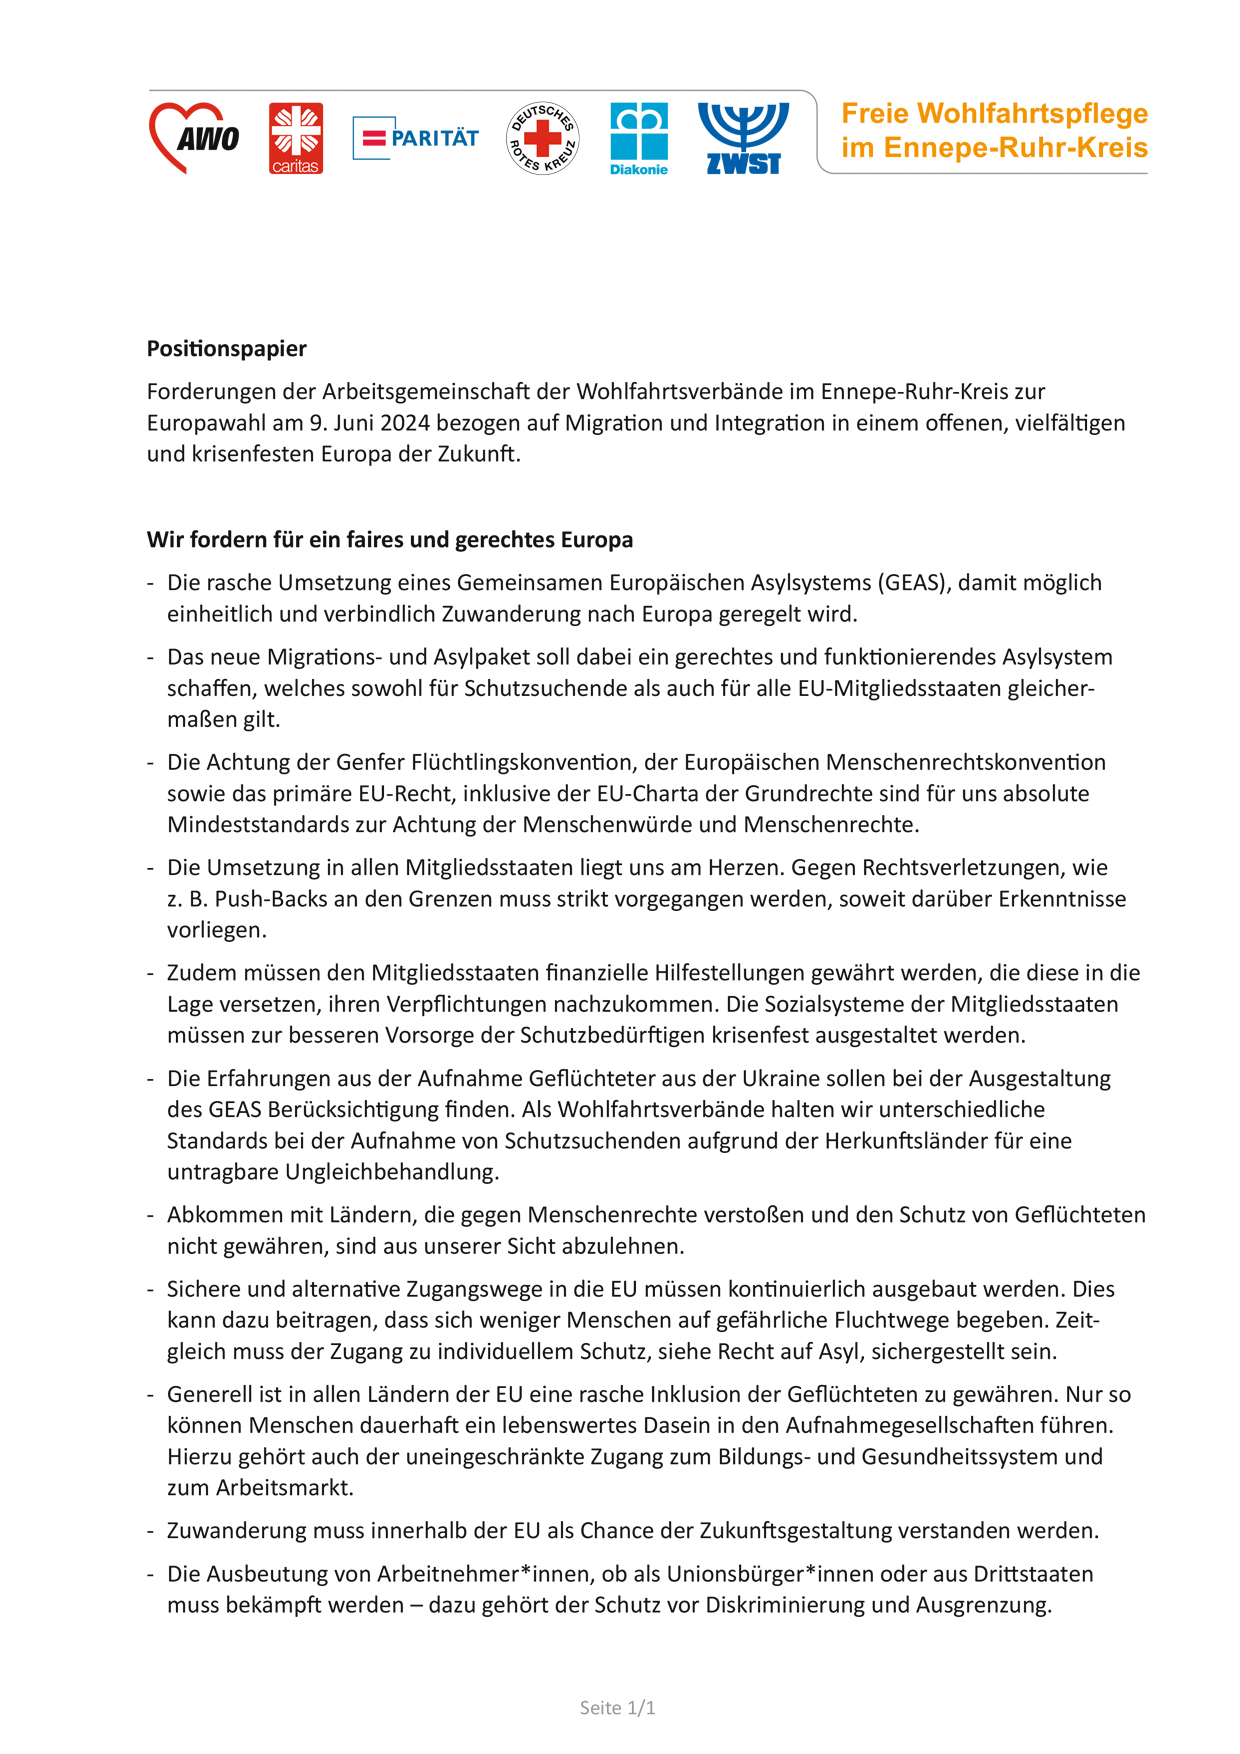 Positionspapier der AG Freie Wohlfahrtspflege im Ennepe-Ruhr-Kreis zur Europawahl, Thema Migration.indd